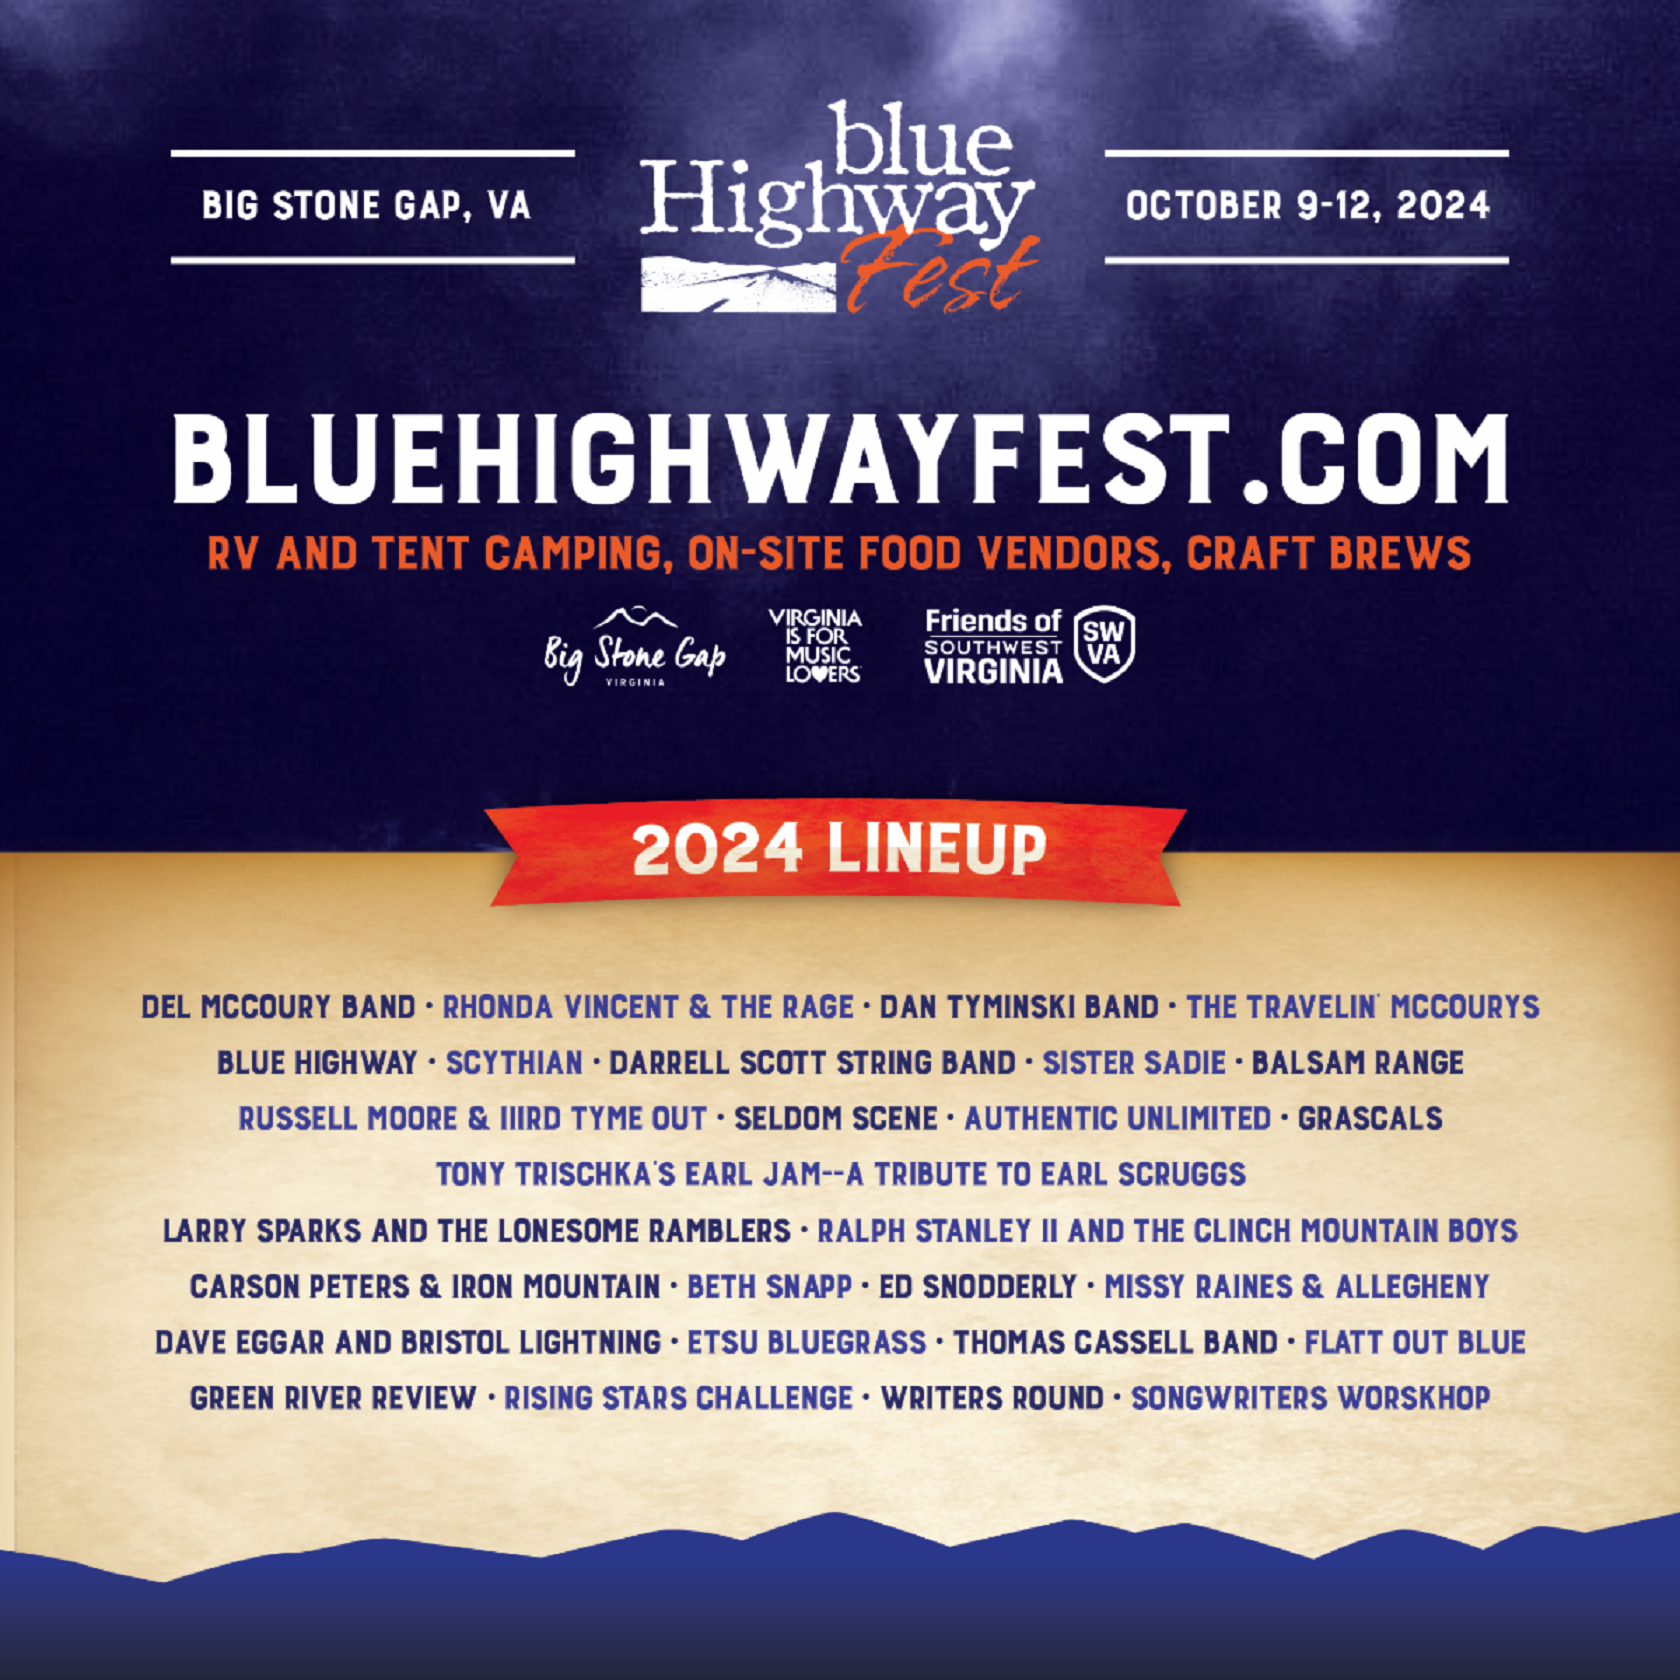 BLUE HIGHWAY FEST Returns October 9-12 for 3rd Annual Festival in Big Stone Gap, VA